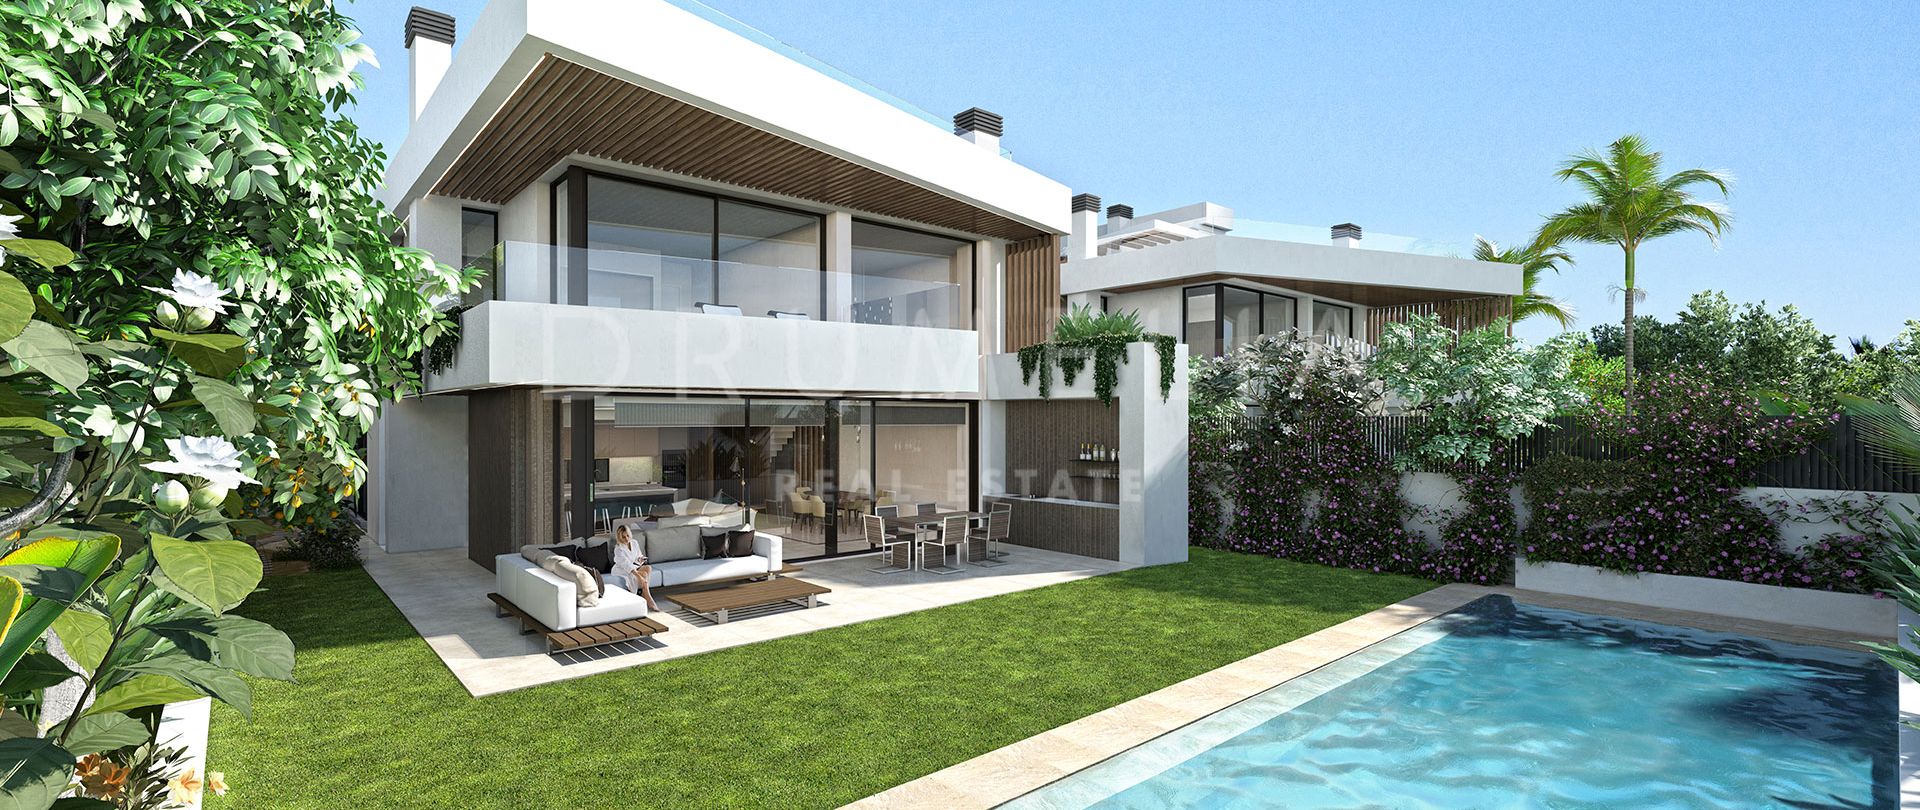 Modernt high-end villa projekt med lyxiga bekvämligheter och avantgarde detaljer i Puerto Banus,Marbella